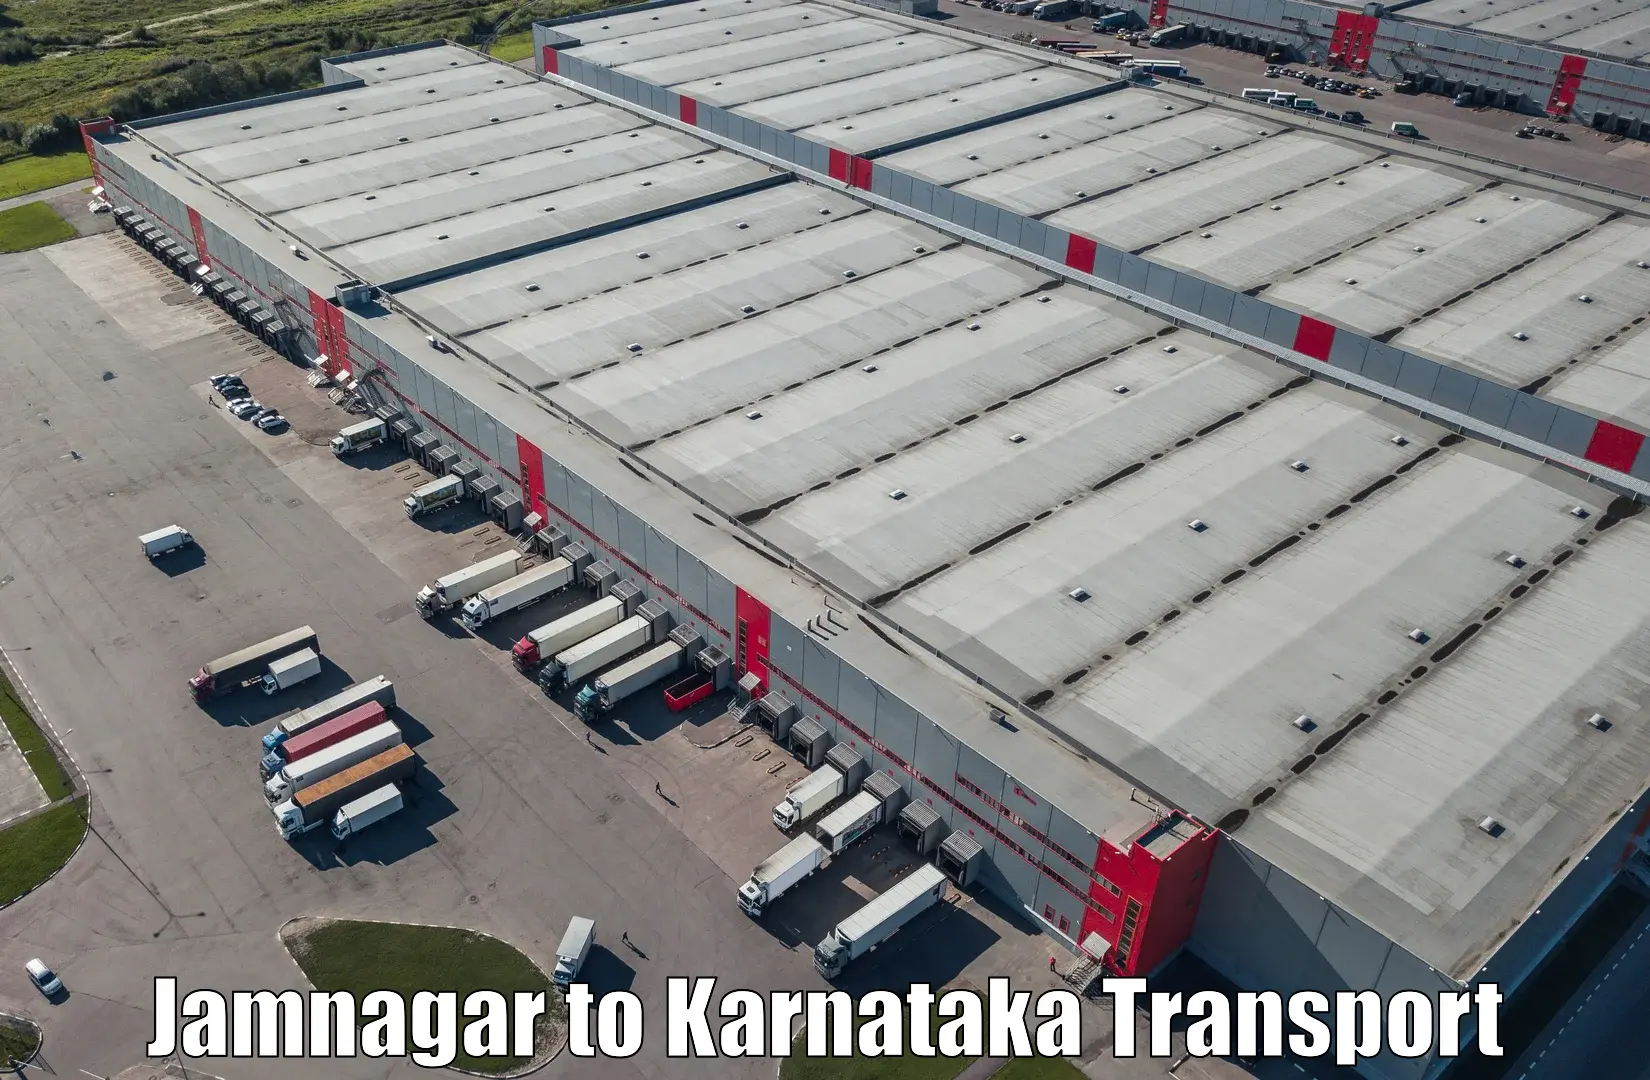 Vehicle transport services Jamnagar to Kalaburagi